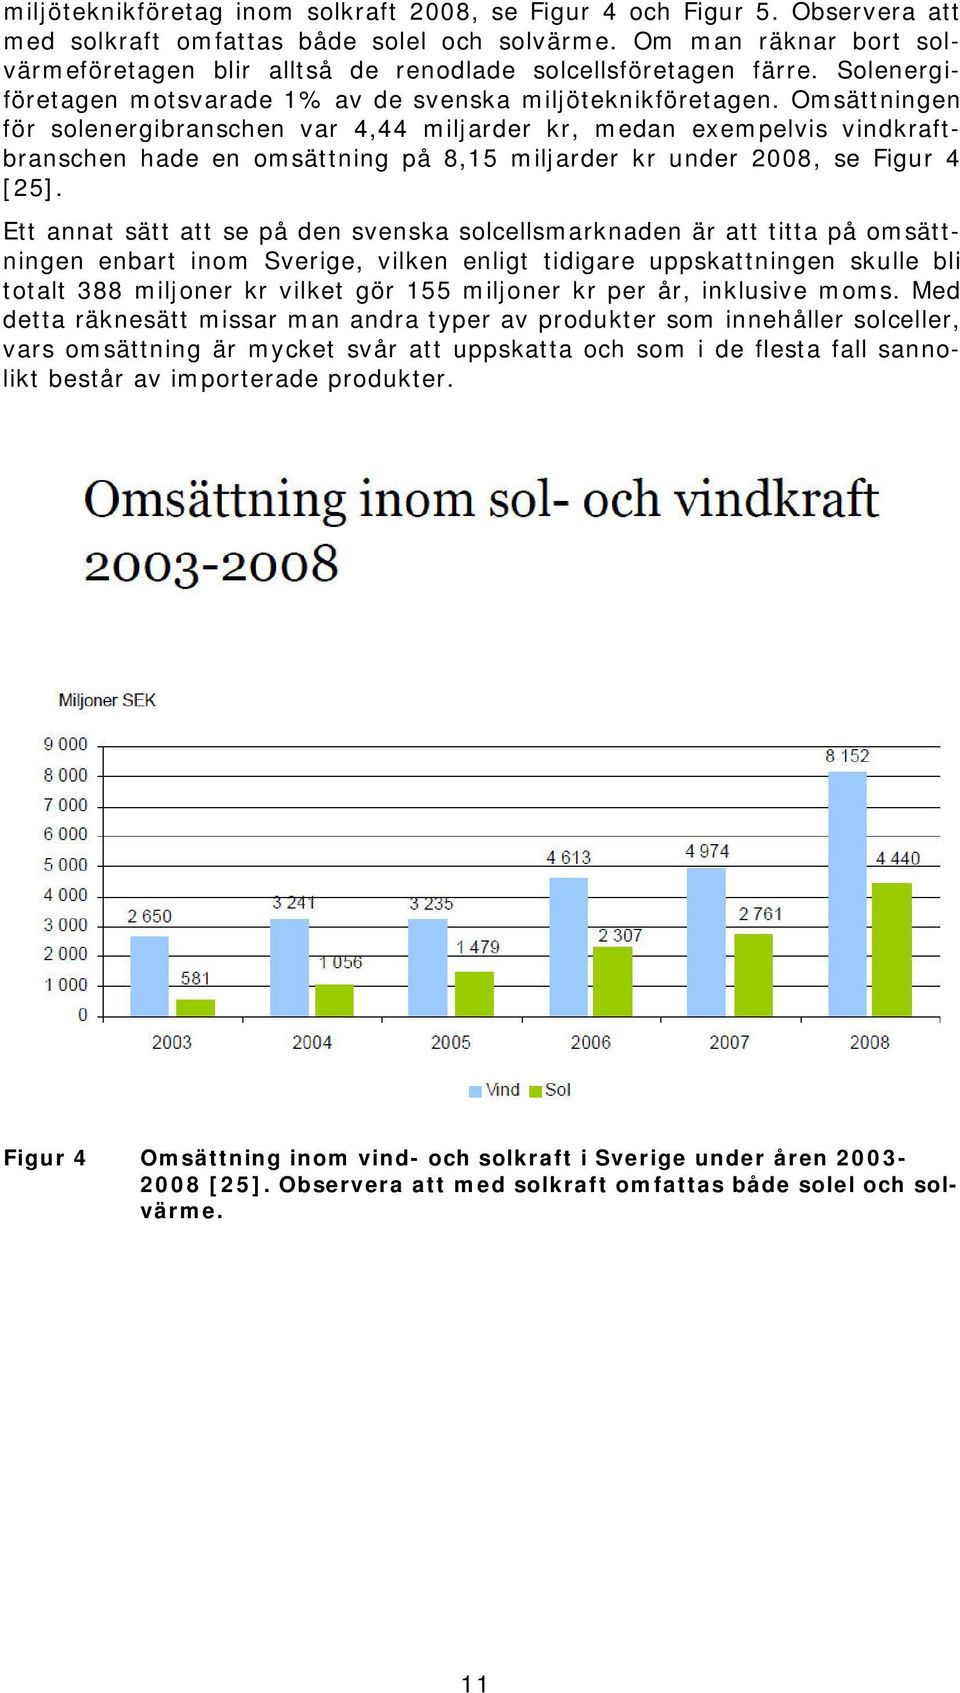 Omsättningen för solenergibranschen var 4,44 miljarder kr, medan exempelvis vindkraftbranschen hade en omsättning på 8,15 miljarder kr under 2008, se Figur 4 [25].